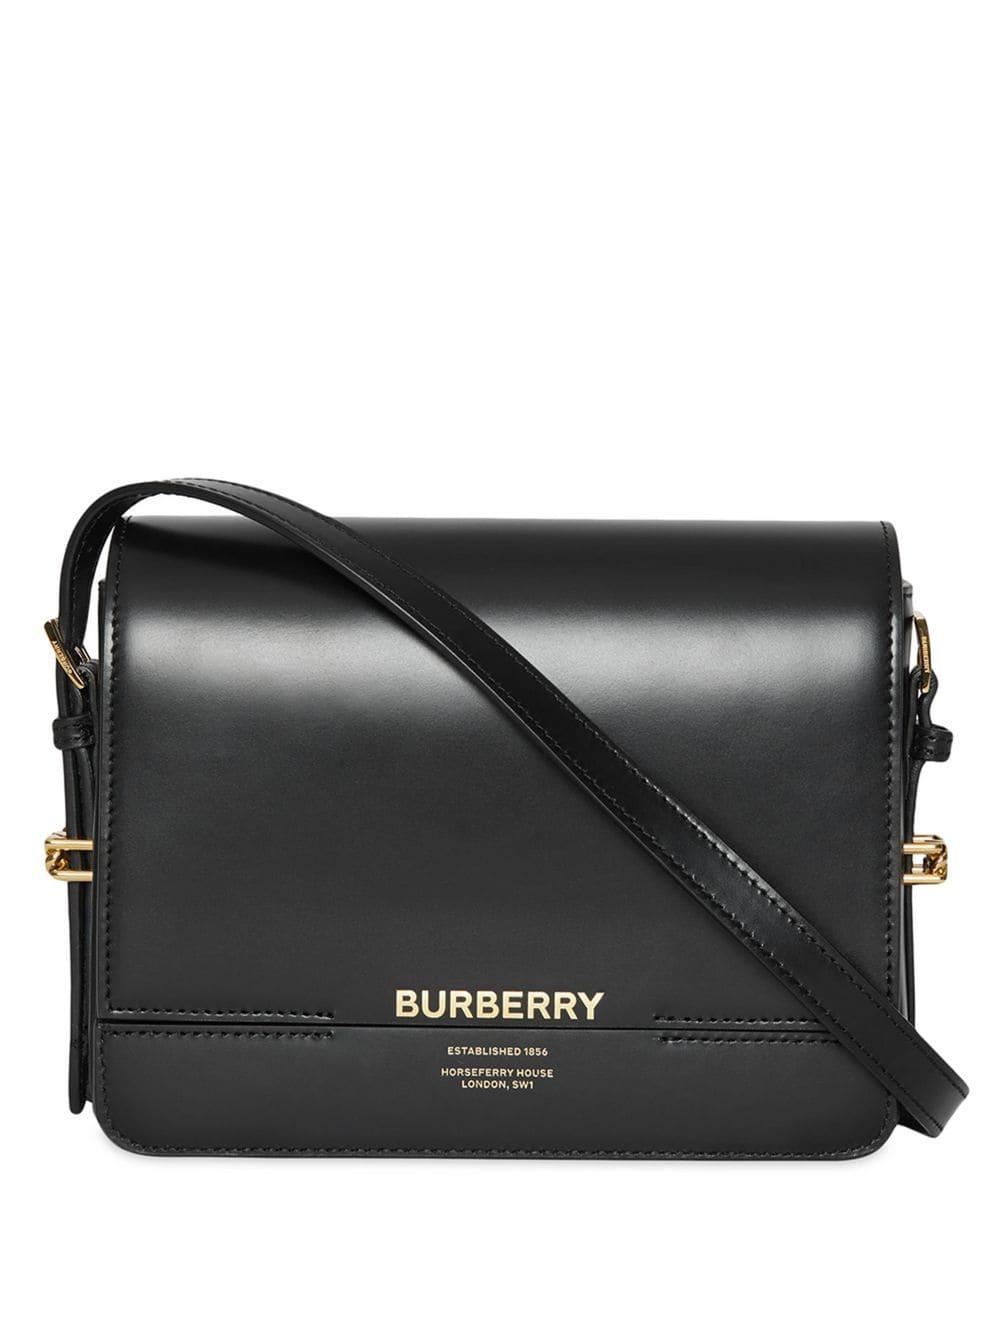 burberry black and white handbag